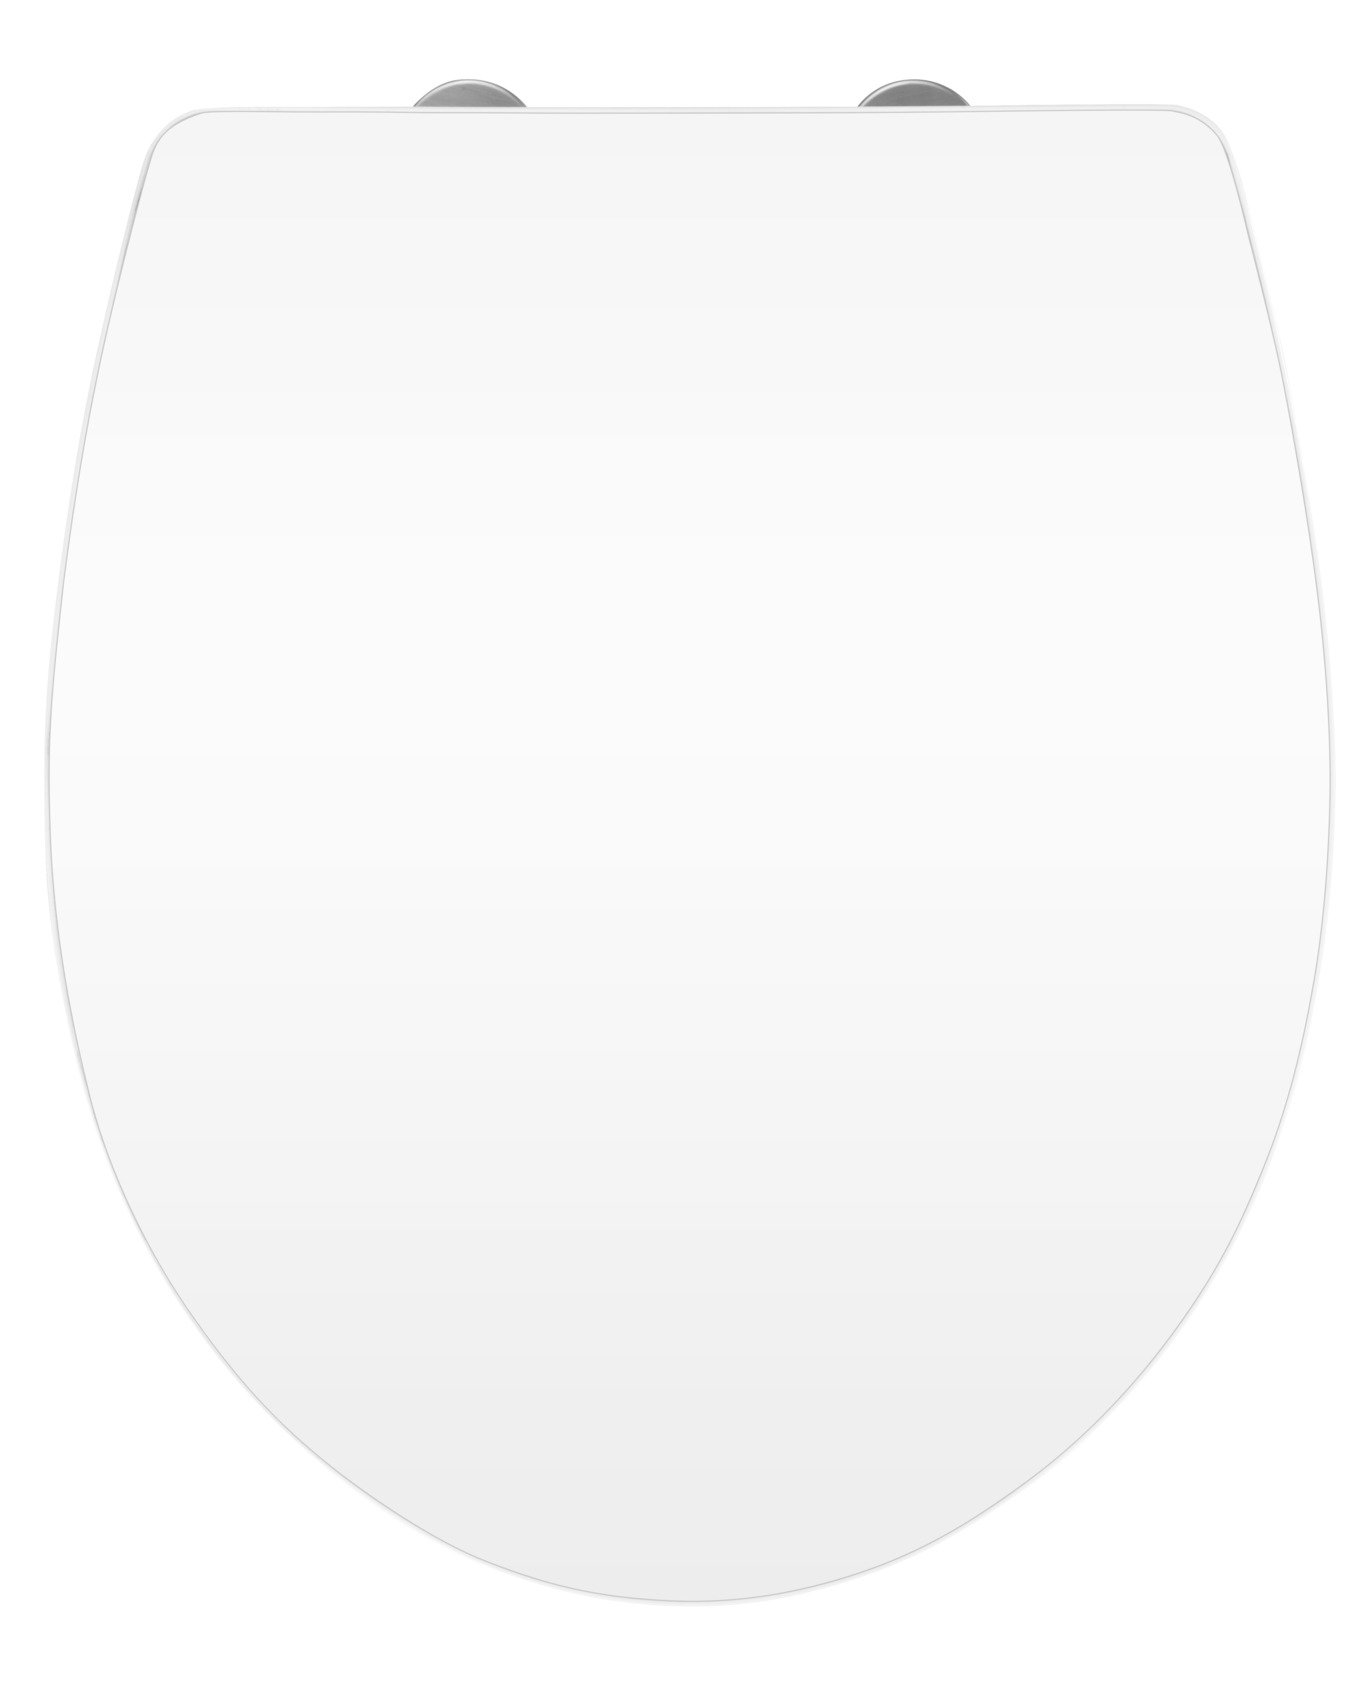 WENKO WC-Sitz Hochglanz Acryl Weiß, High Gloss Oberfläche, hygienischer Toilettendeckel mit Absenkautomatik, aus antibakteriellem Duroplast, 39 x 45 cm